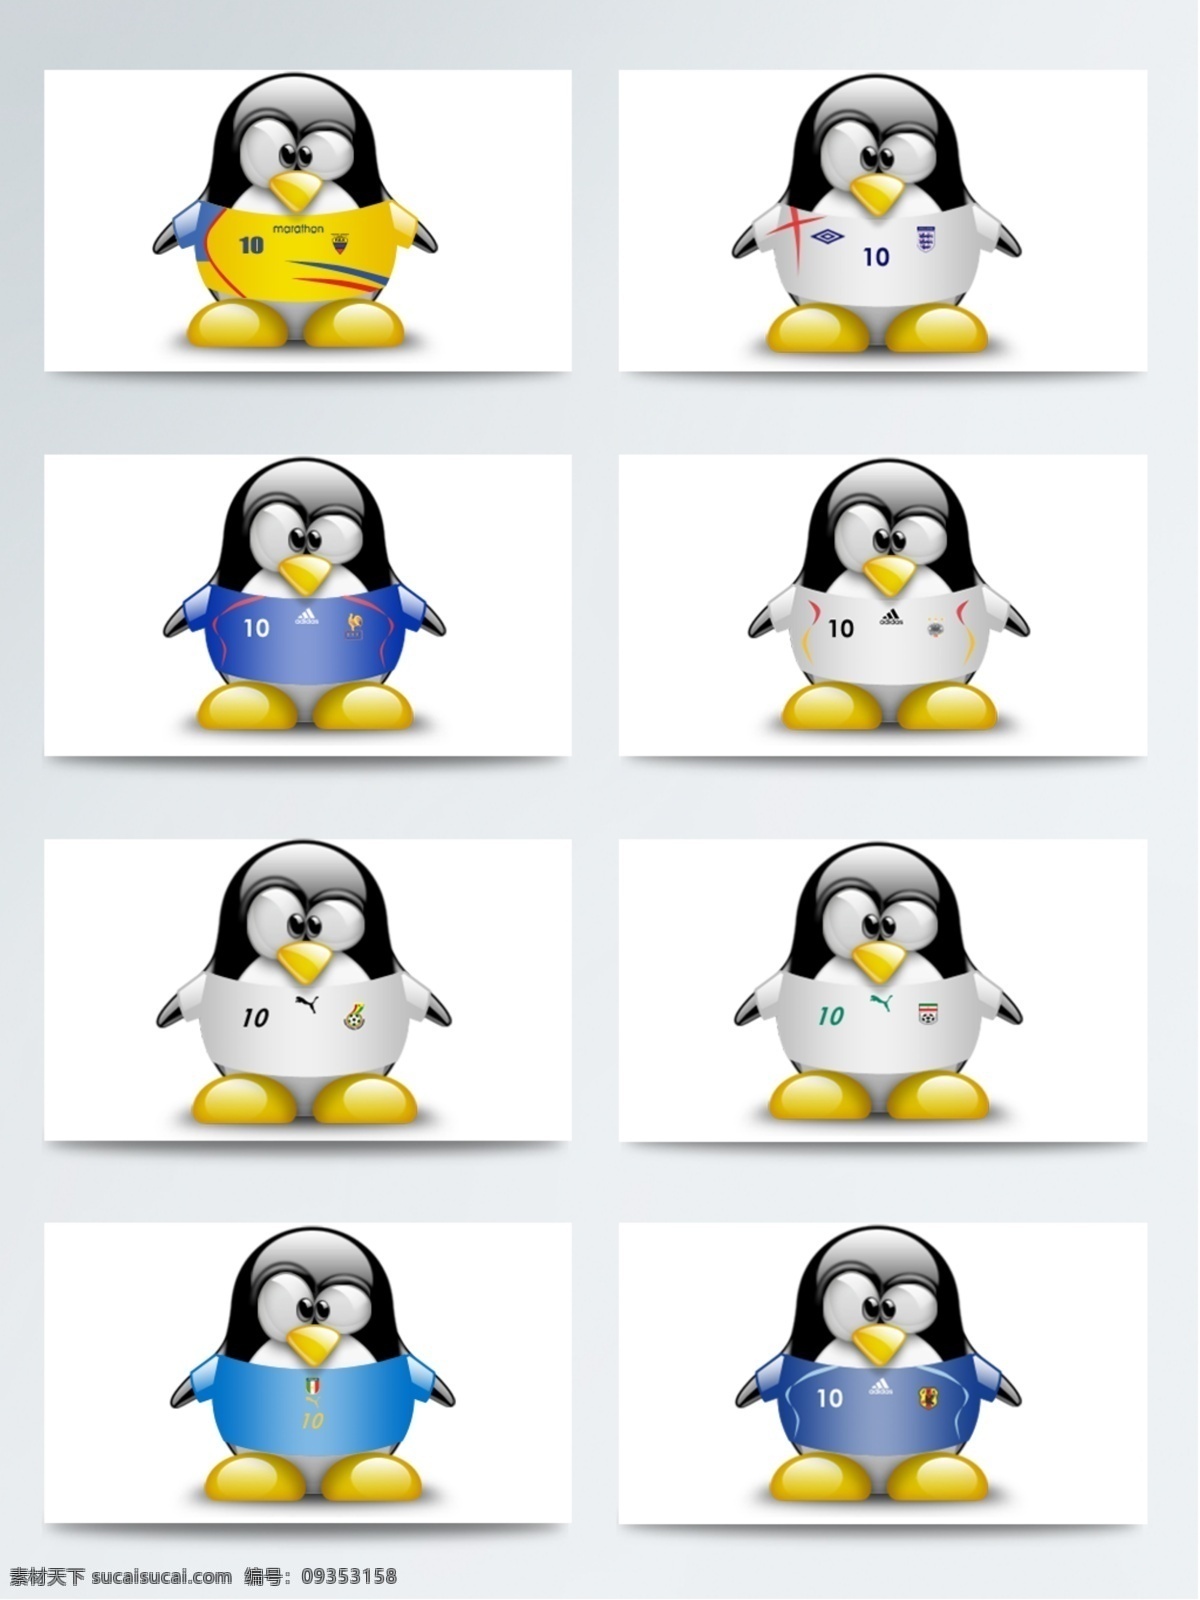 企鹅 宝贝 足球 服饰 图标素材 可爱企鹅 企鹅宝贝